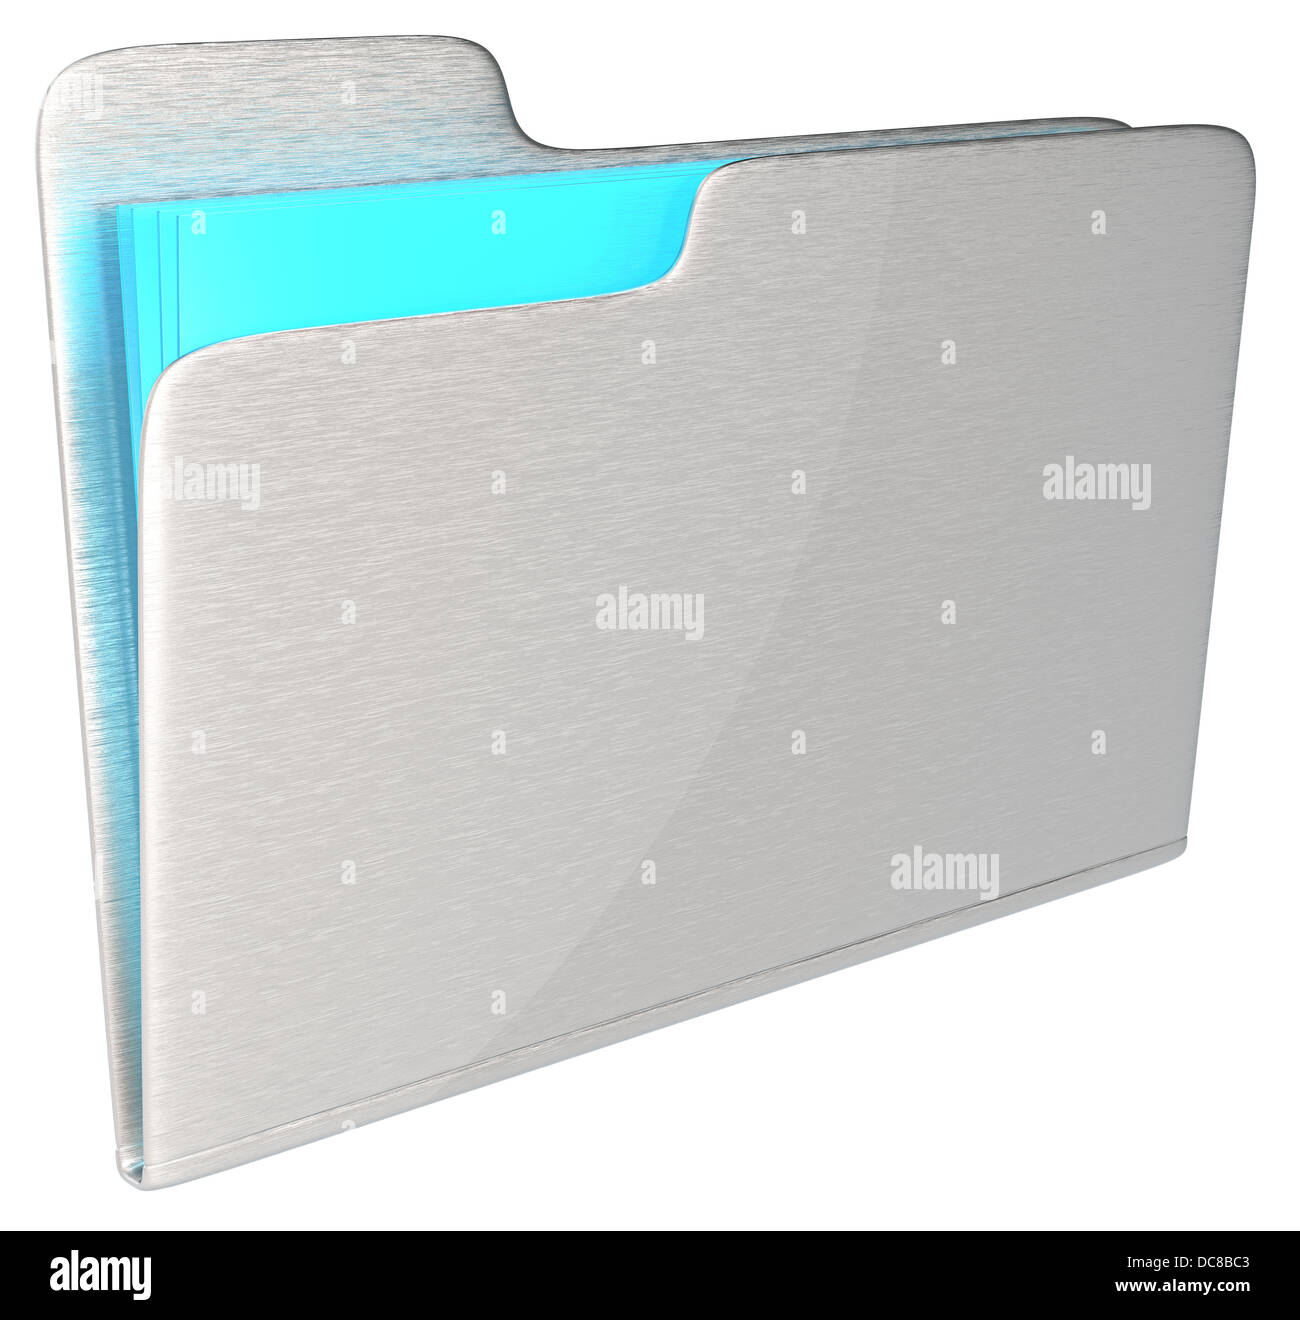 Abstract metallo spazzolato cartella con luce blu contenuto di vetro. Spazzolato. Foto Stock